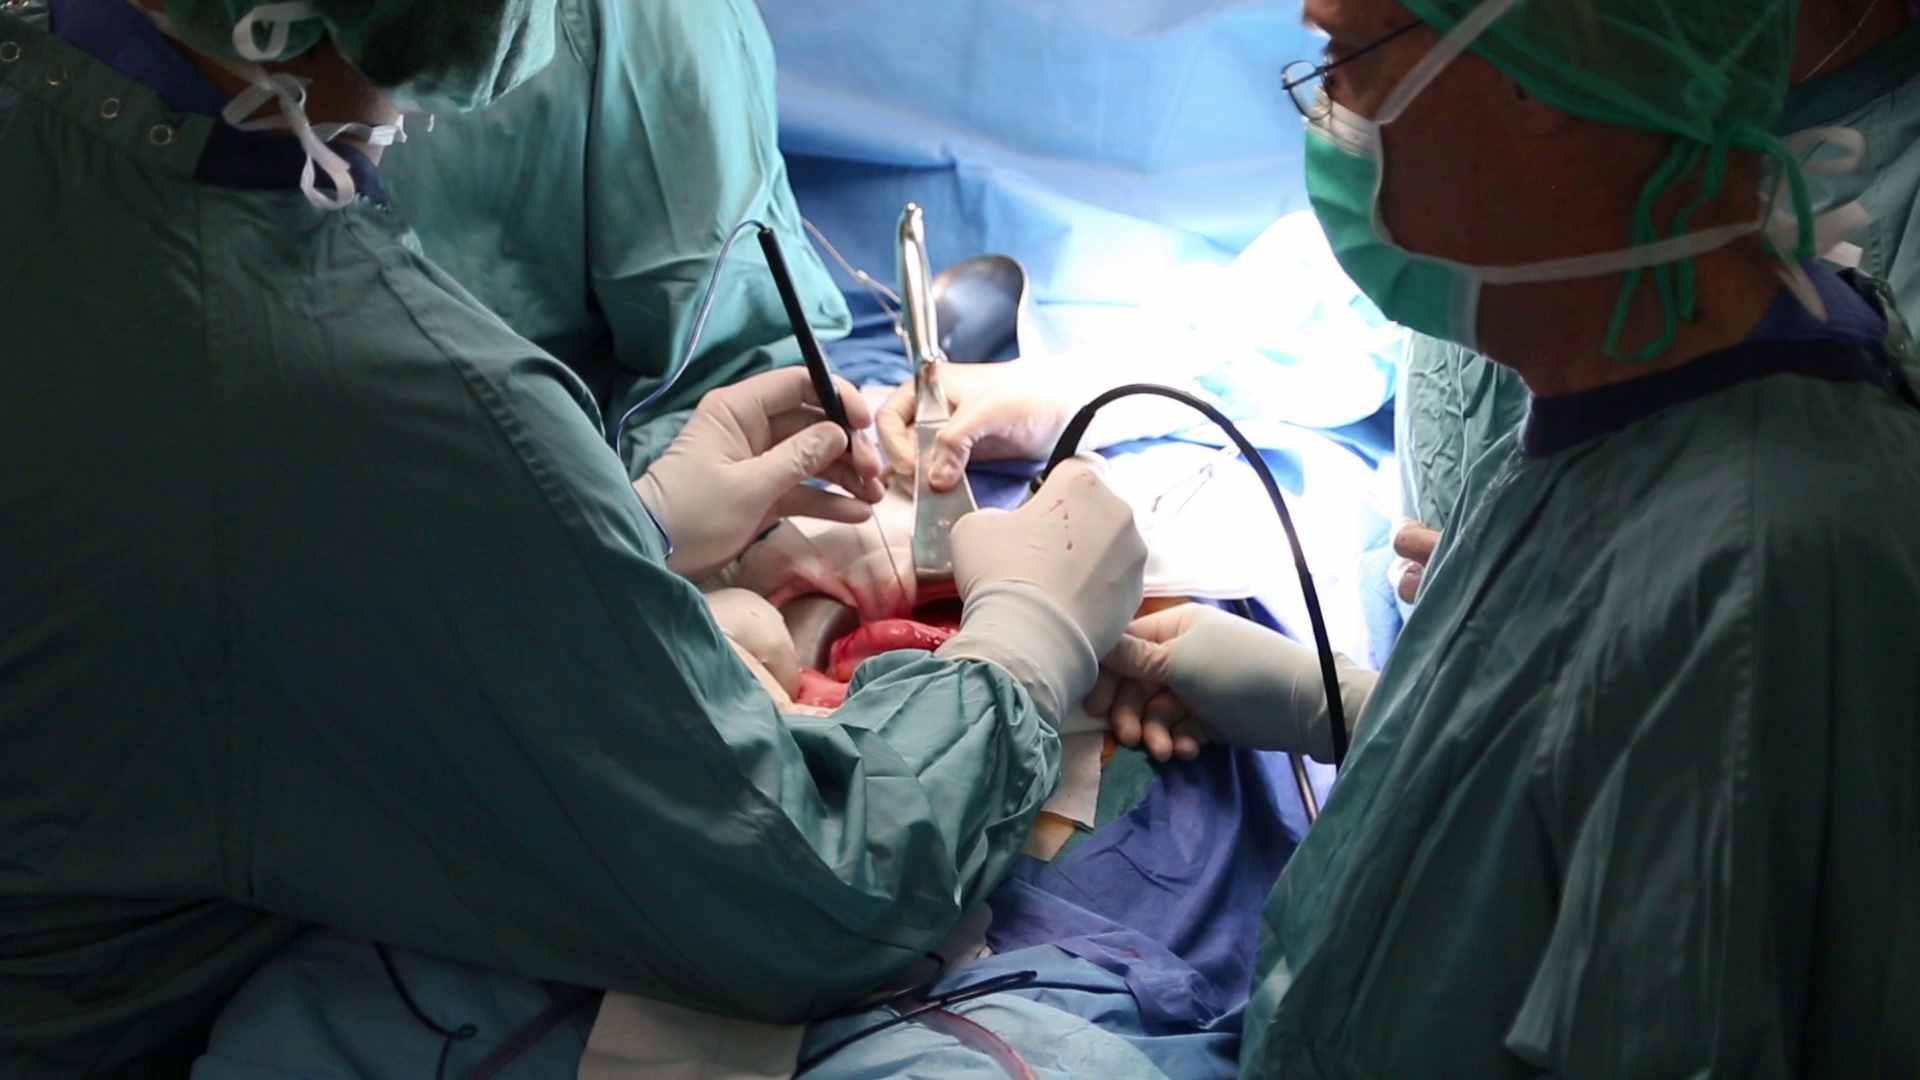 El hospital Vall d'Hebron ha practicado una cirugía innovadora en pacientes con un tipo de cáncer de páncreas hasta ahora inoperable